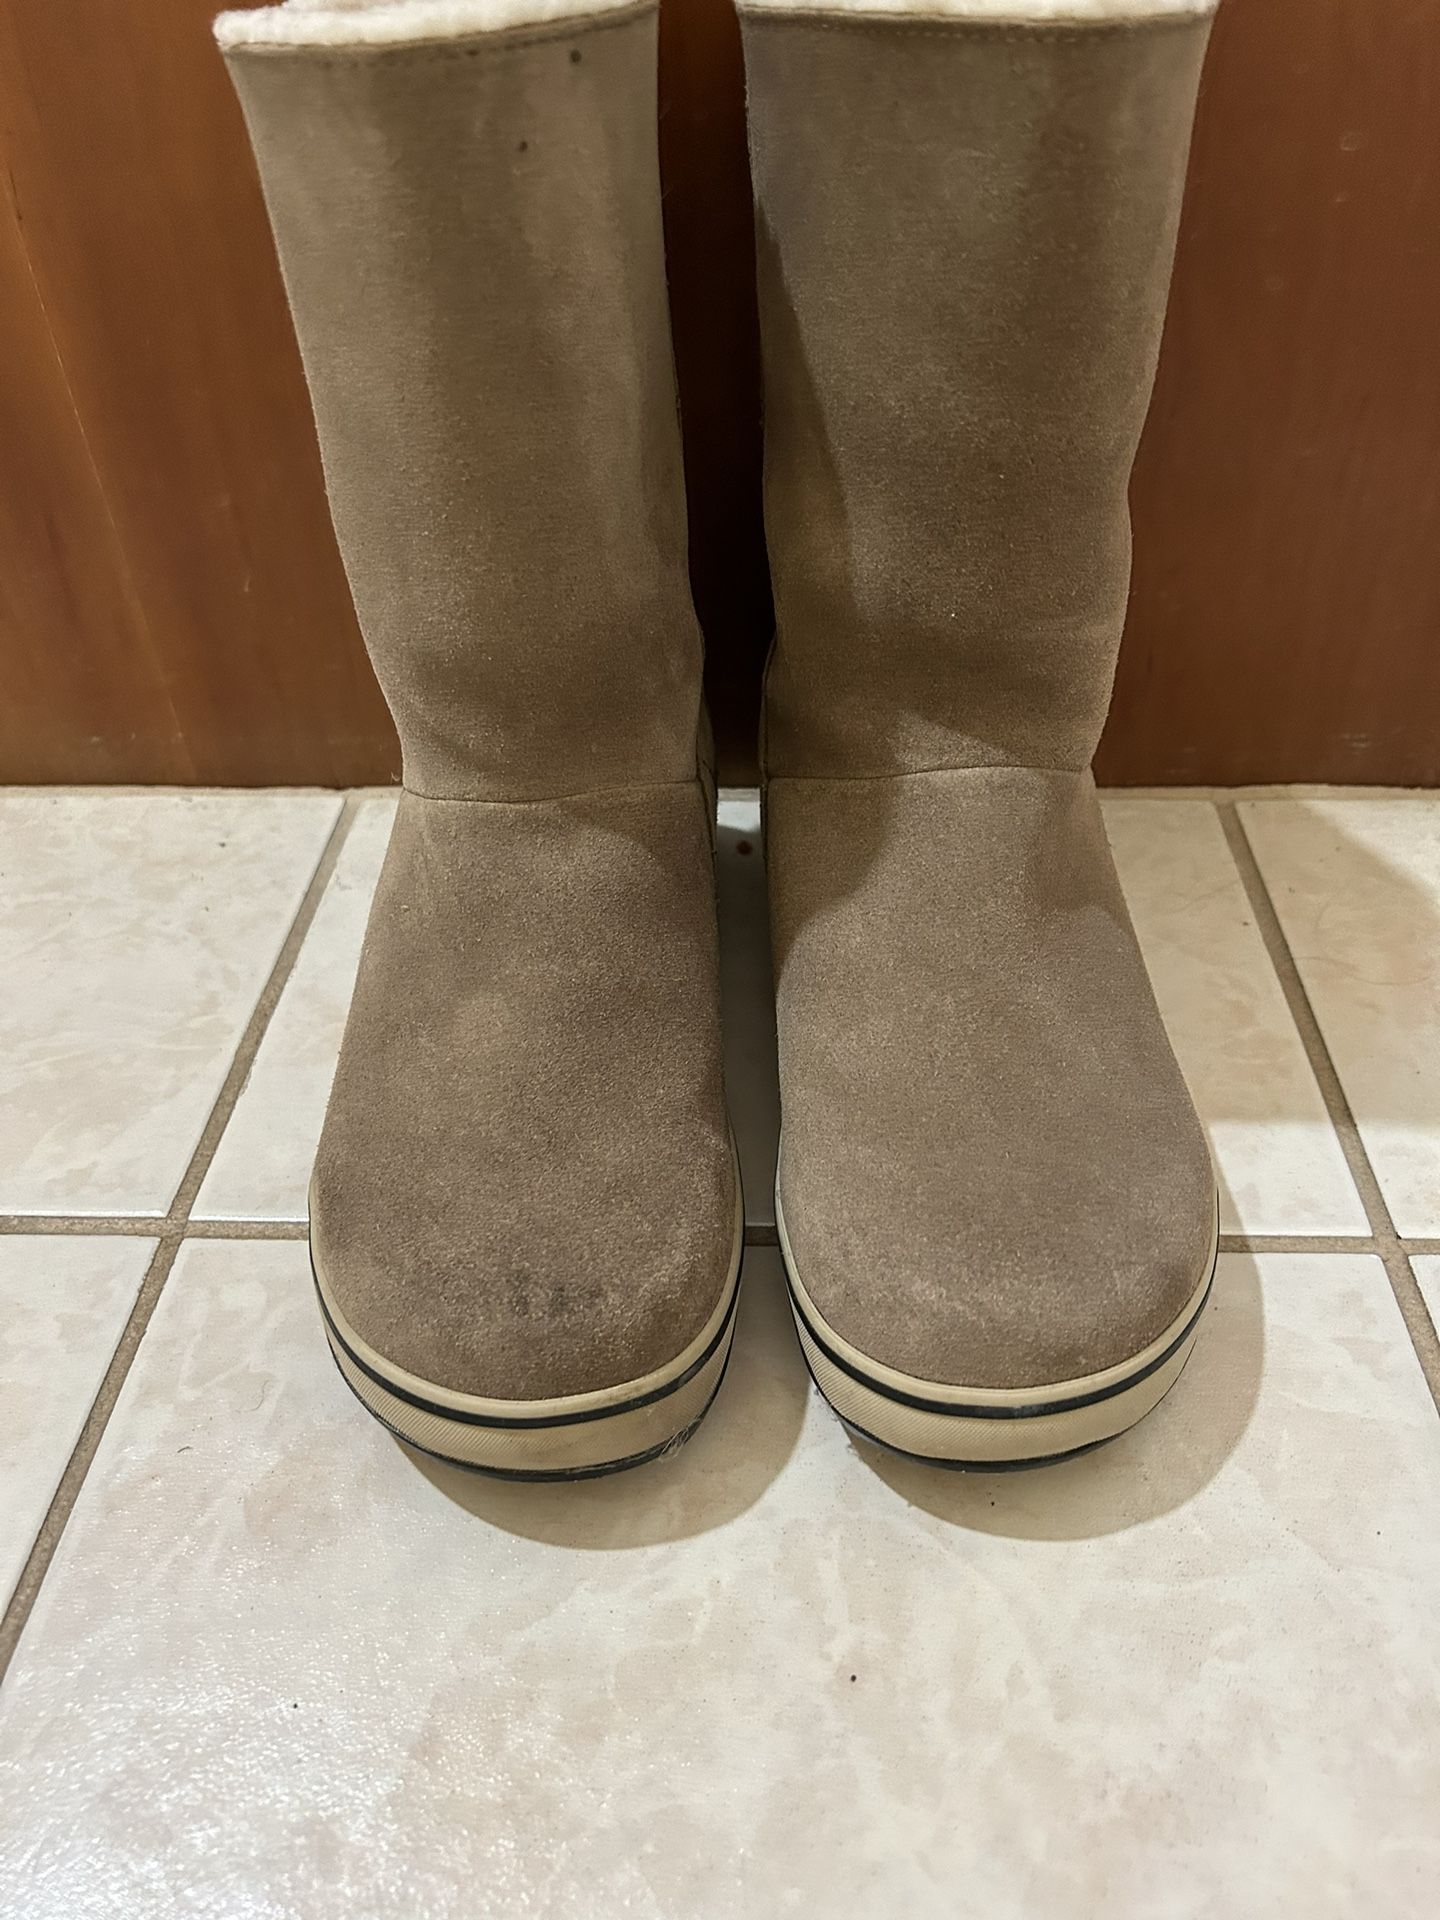 Sorel Woman’s Waterproof Boots. Size 7.5